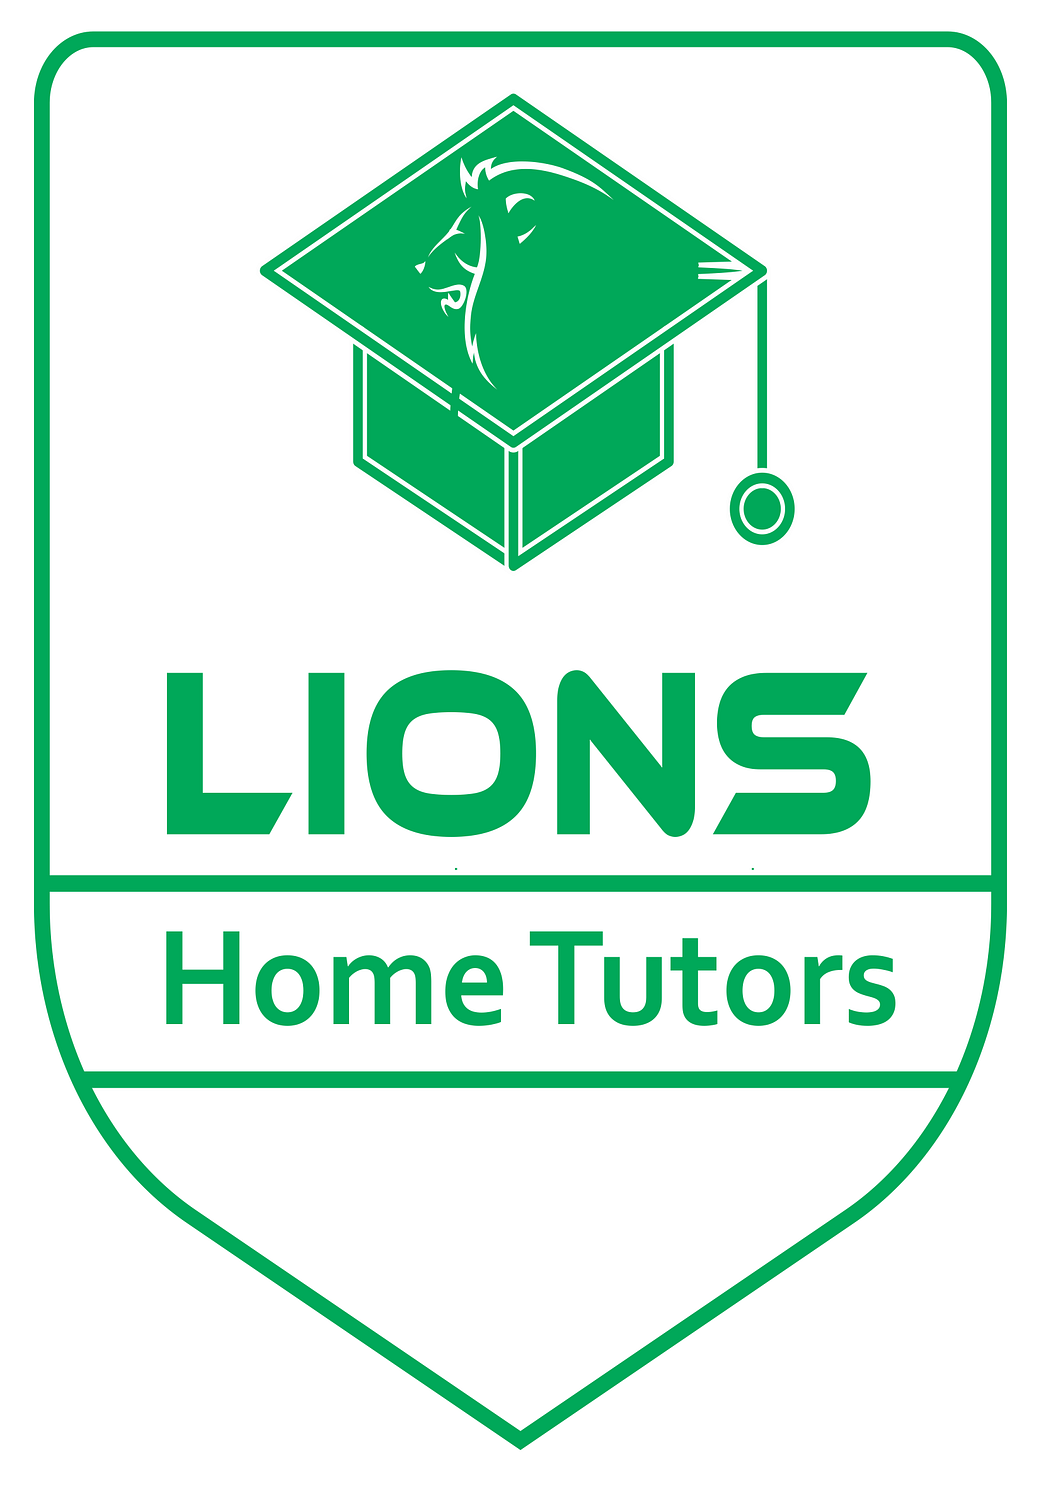 LIONS Home Tutor Logo